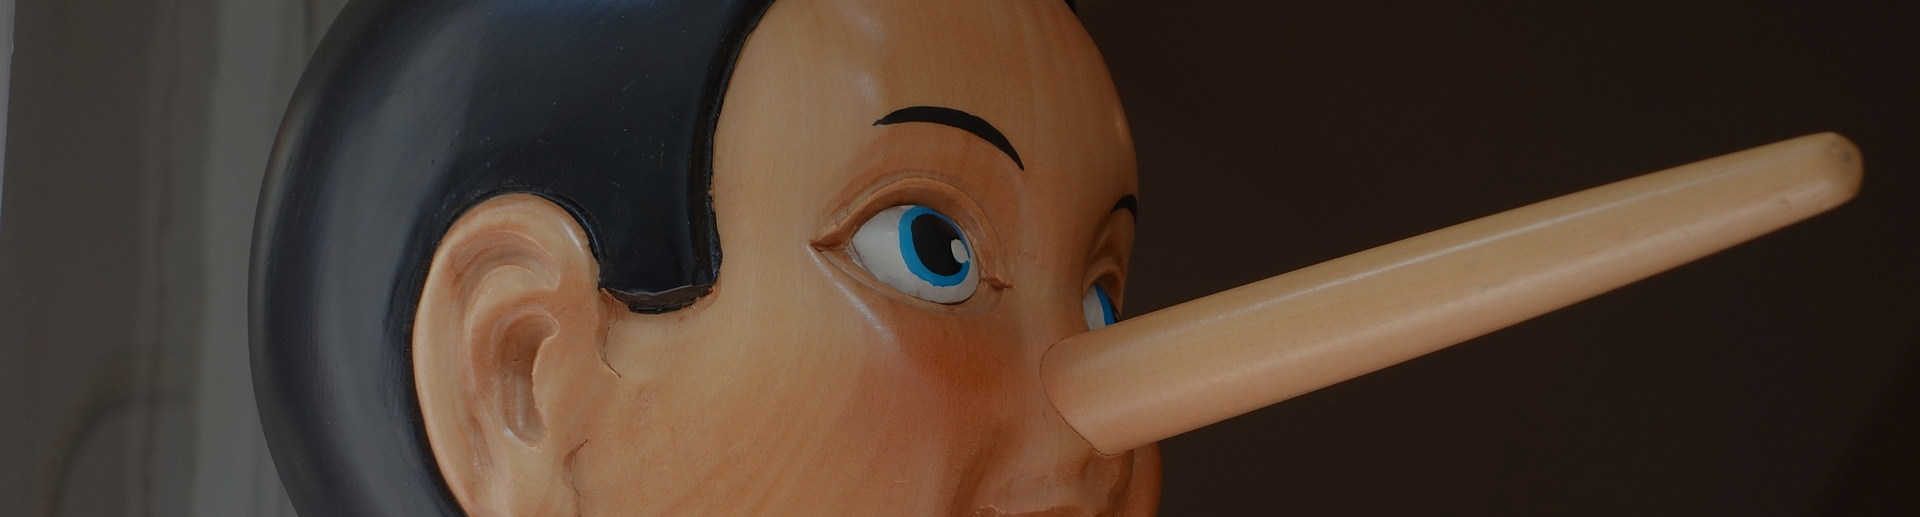 Laboratorio: Pinocchio